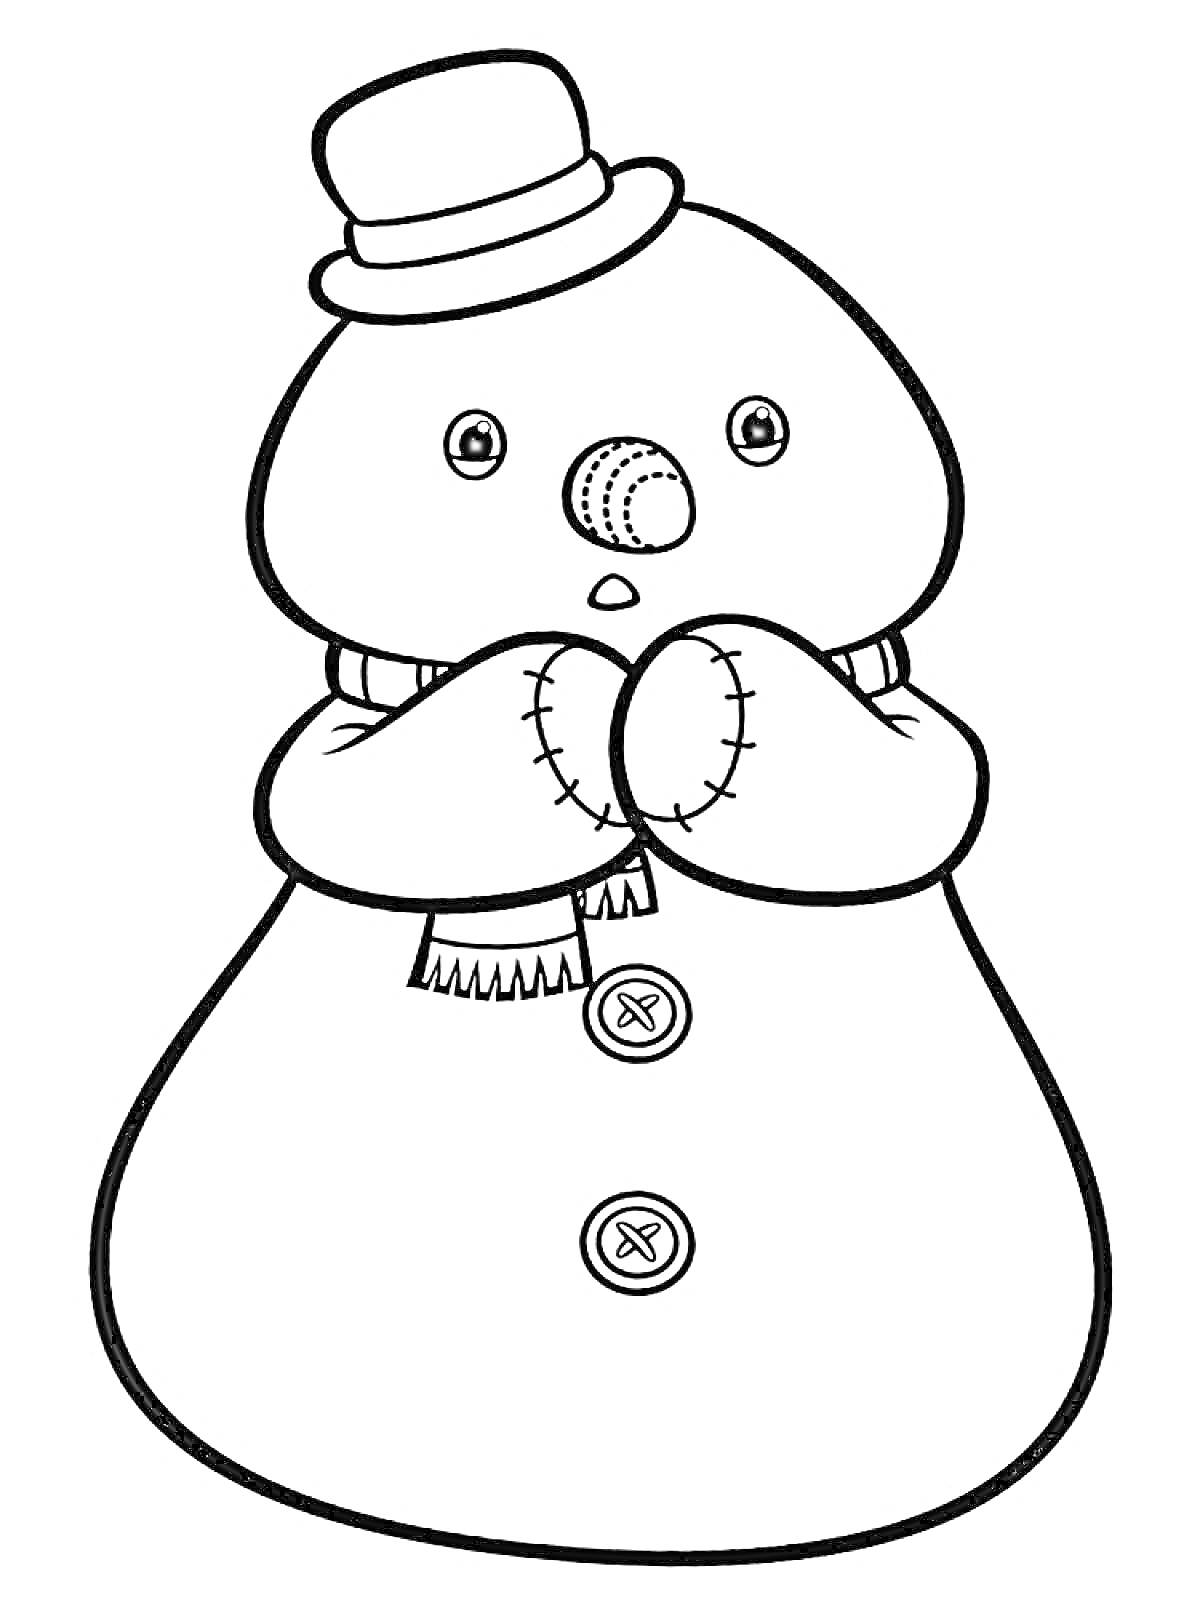 Раскраска Снеговик Чилли в шляпе, шарфе и рукавицах